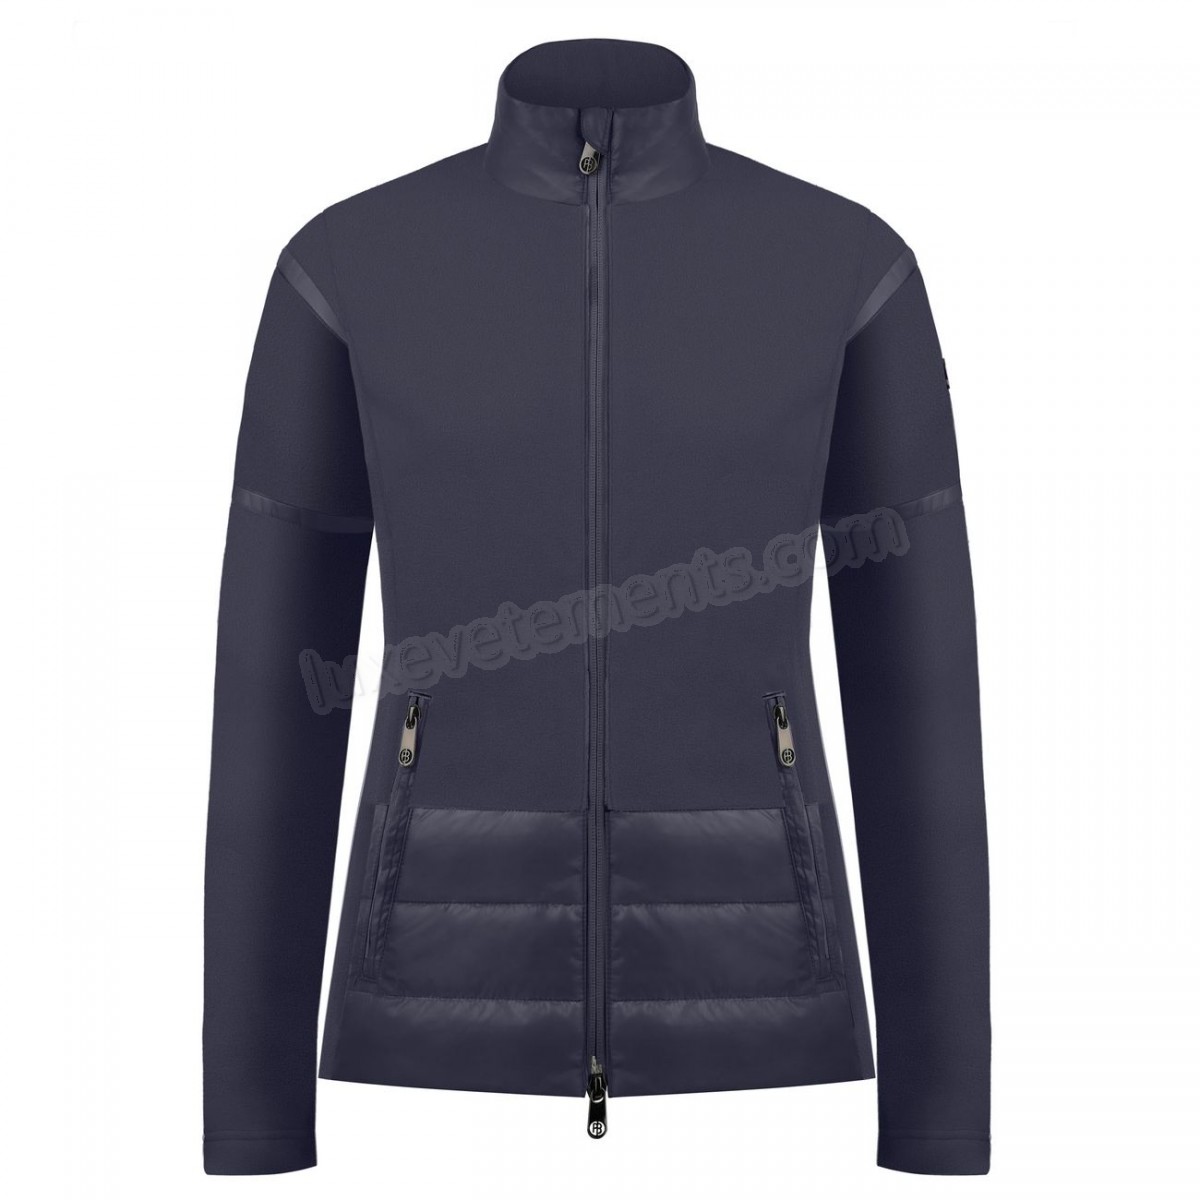 Poivre Blanc-Sports d'hiver femme POIVRE BLANC Veste Polaire Poivre Blanc Hybrid Fleece Jacket 1601 Gothic Blue 4 Femme Vente en ligne - -1